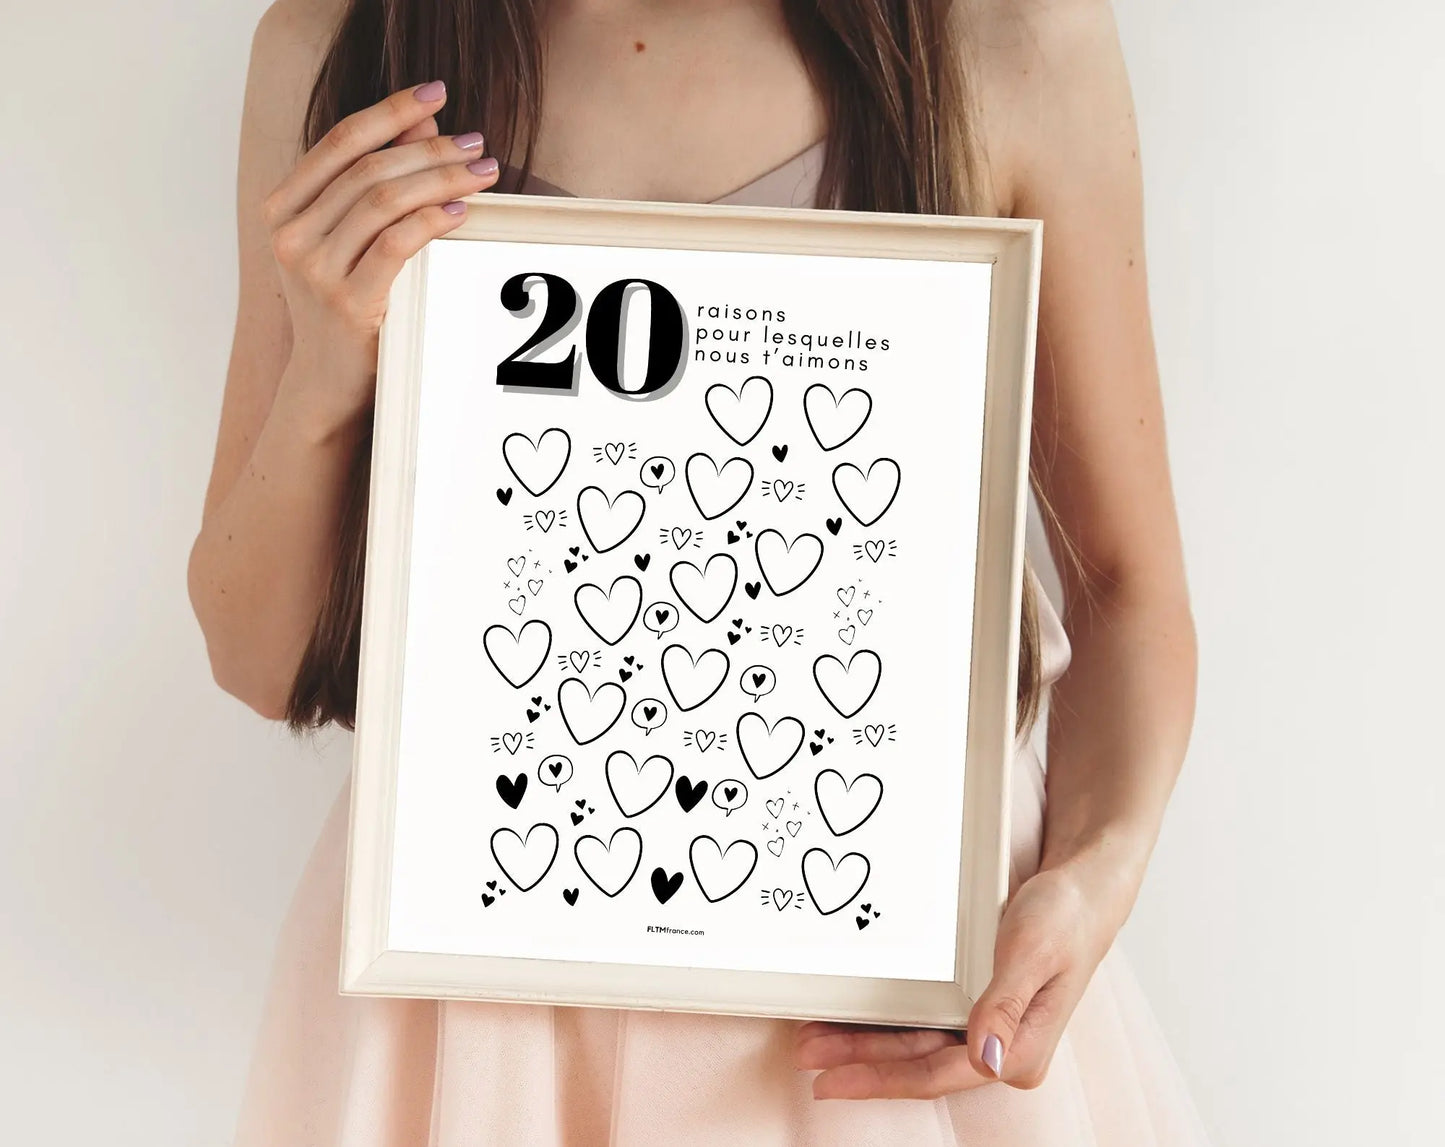 Affiche 20 raisons pour lesquelles nous t’aimons - Livre d'or 20 ans FLTMfrance